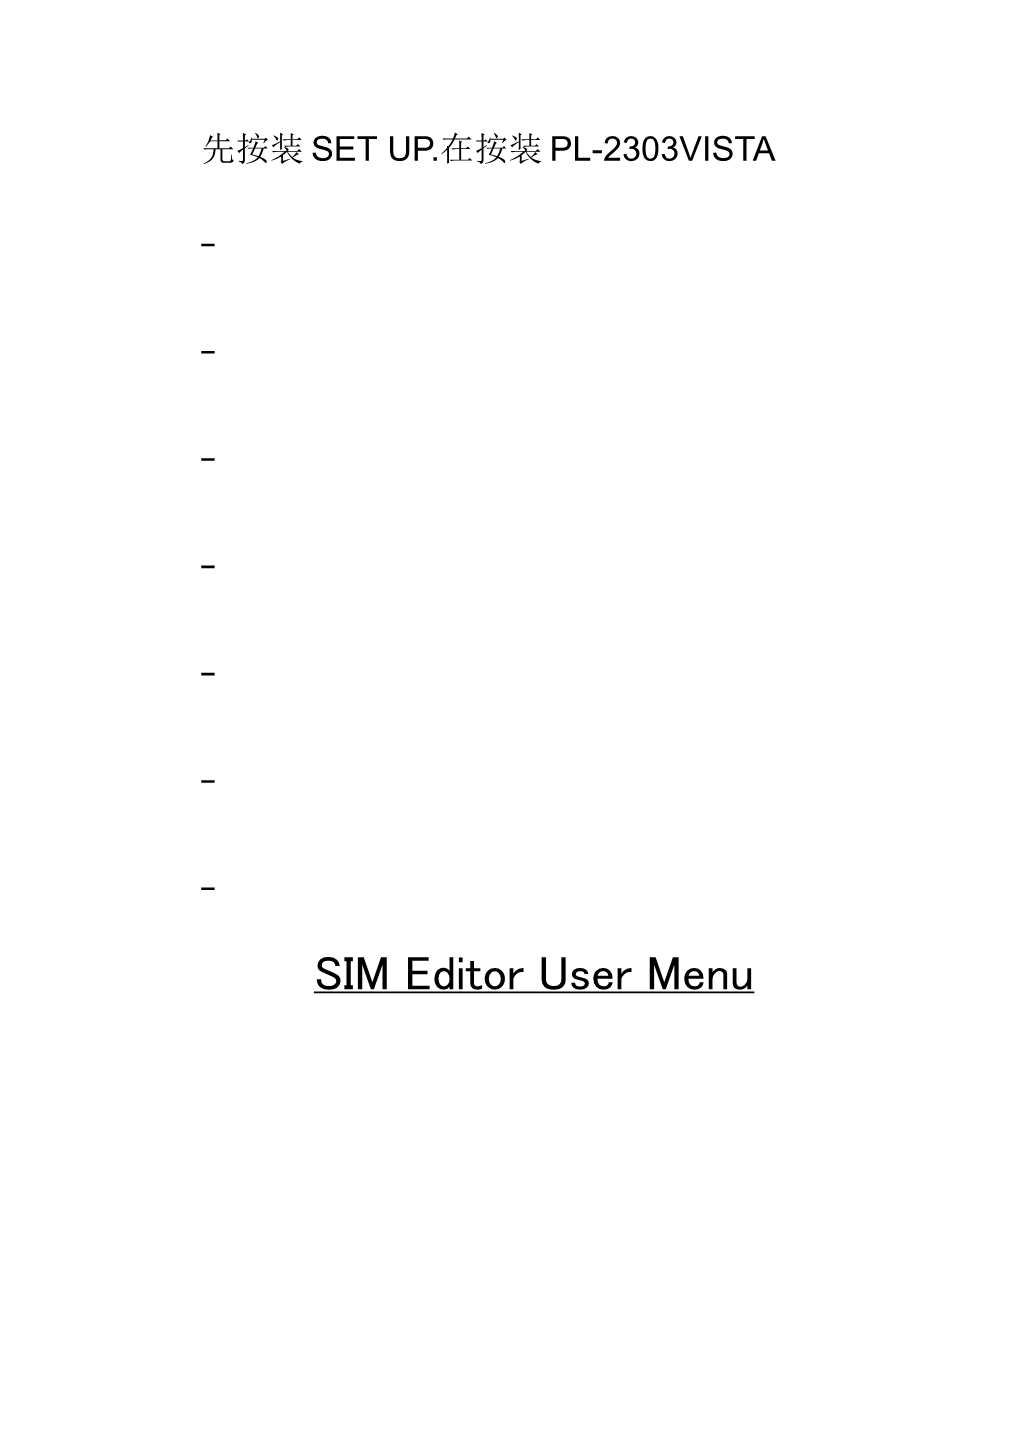 SIM Editor User Menu